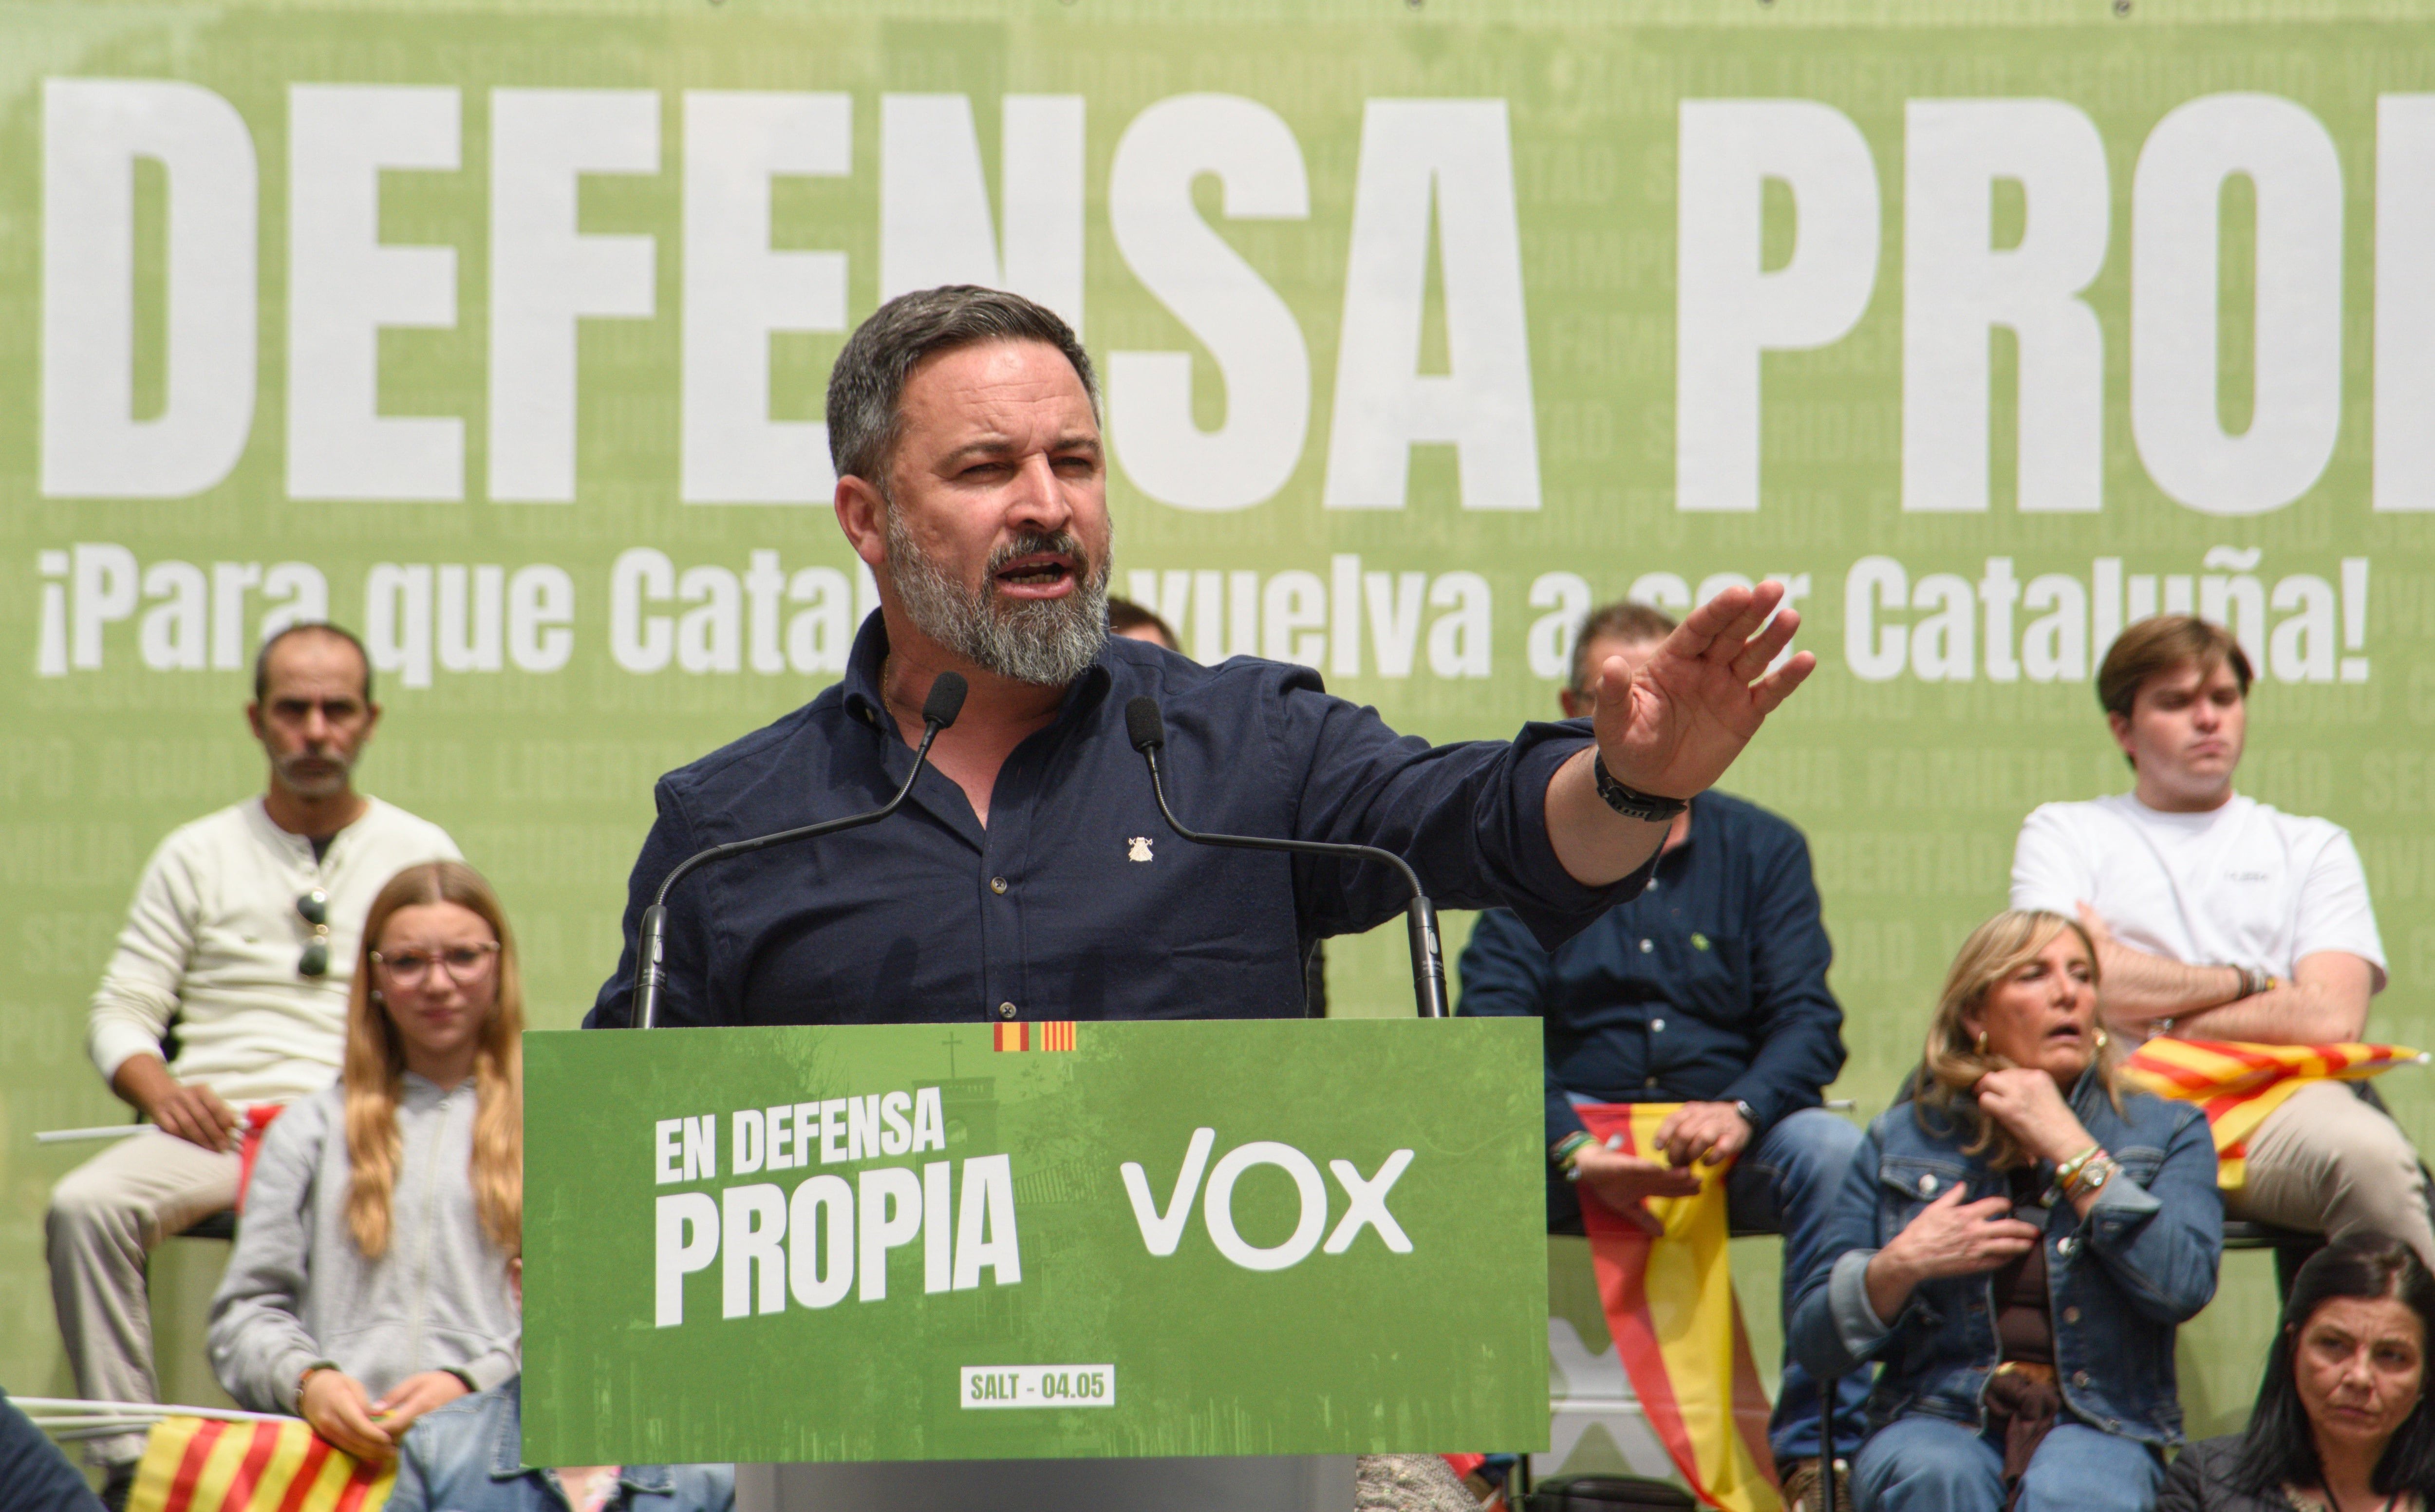 El presidente de VOX, Santiago Abascal, interviene durante un acto de campaña de VOX, en la plaza Llibertat, a 4 de mayo de 2024, en Salt, Girona, Catalunya (España). Este mitin se enmarca como uno de los celebrados por VOX durante la campaña electoral para los comicios catalanes del próximo 12 de mayo.
04 MAYO 2024;VOX;MITIN;CAMPAÑA;ELECCIONES;AUTONÓMICAS;12M;12 DE MAYO
Alberto Paredes / Europa Press
04/05/2024